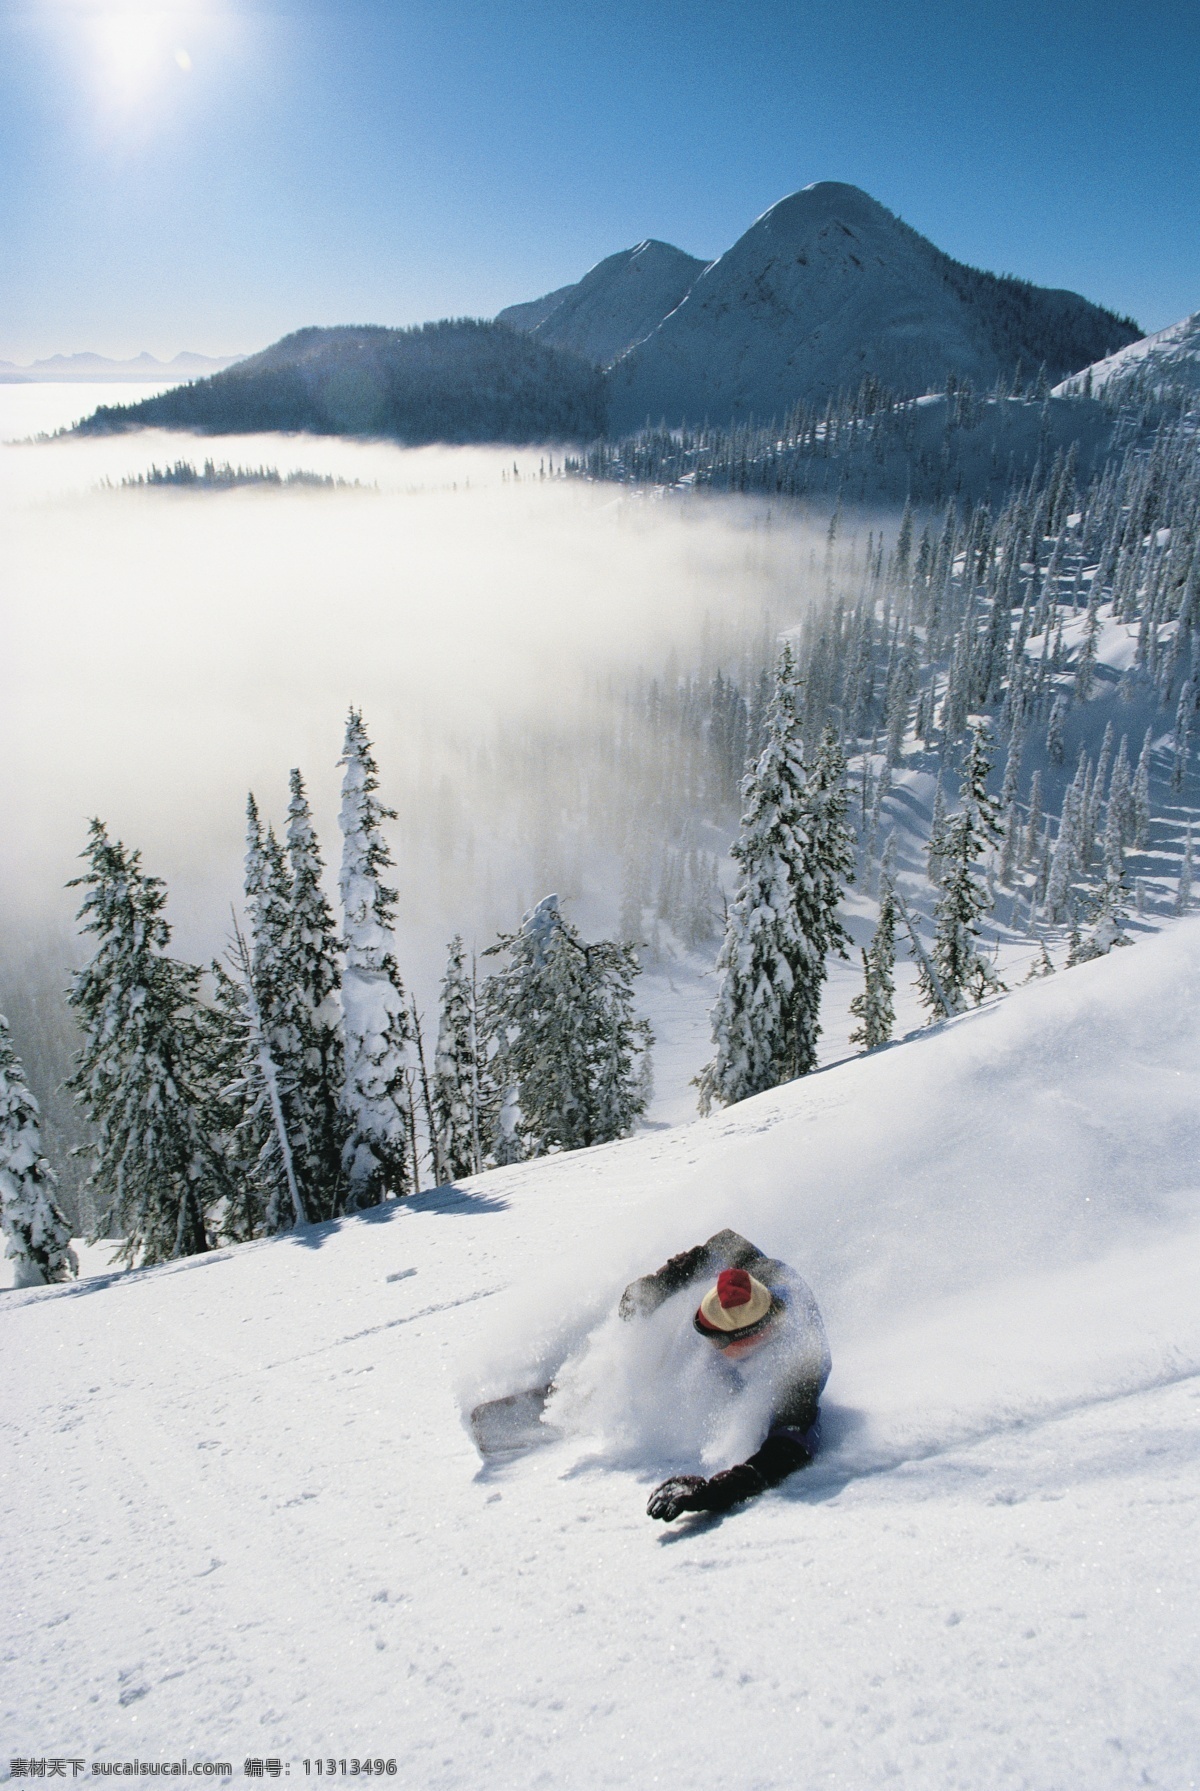 飞速 下滑 滑雪 运动员 高清 雪地运动 划雪运动 极限运动 体育项目 速度 运动图片 生活百科 雪山 风景 摄影图片 高清图片 体育运动 白色